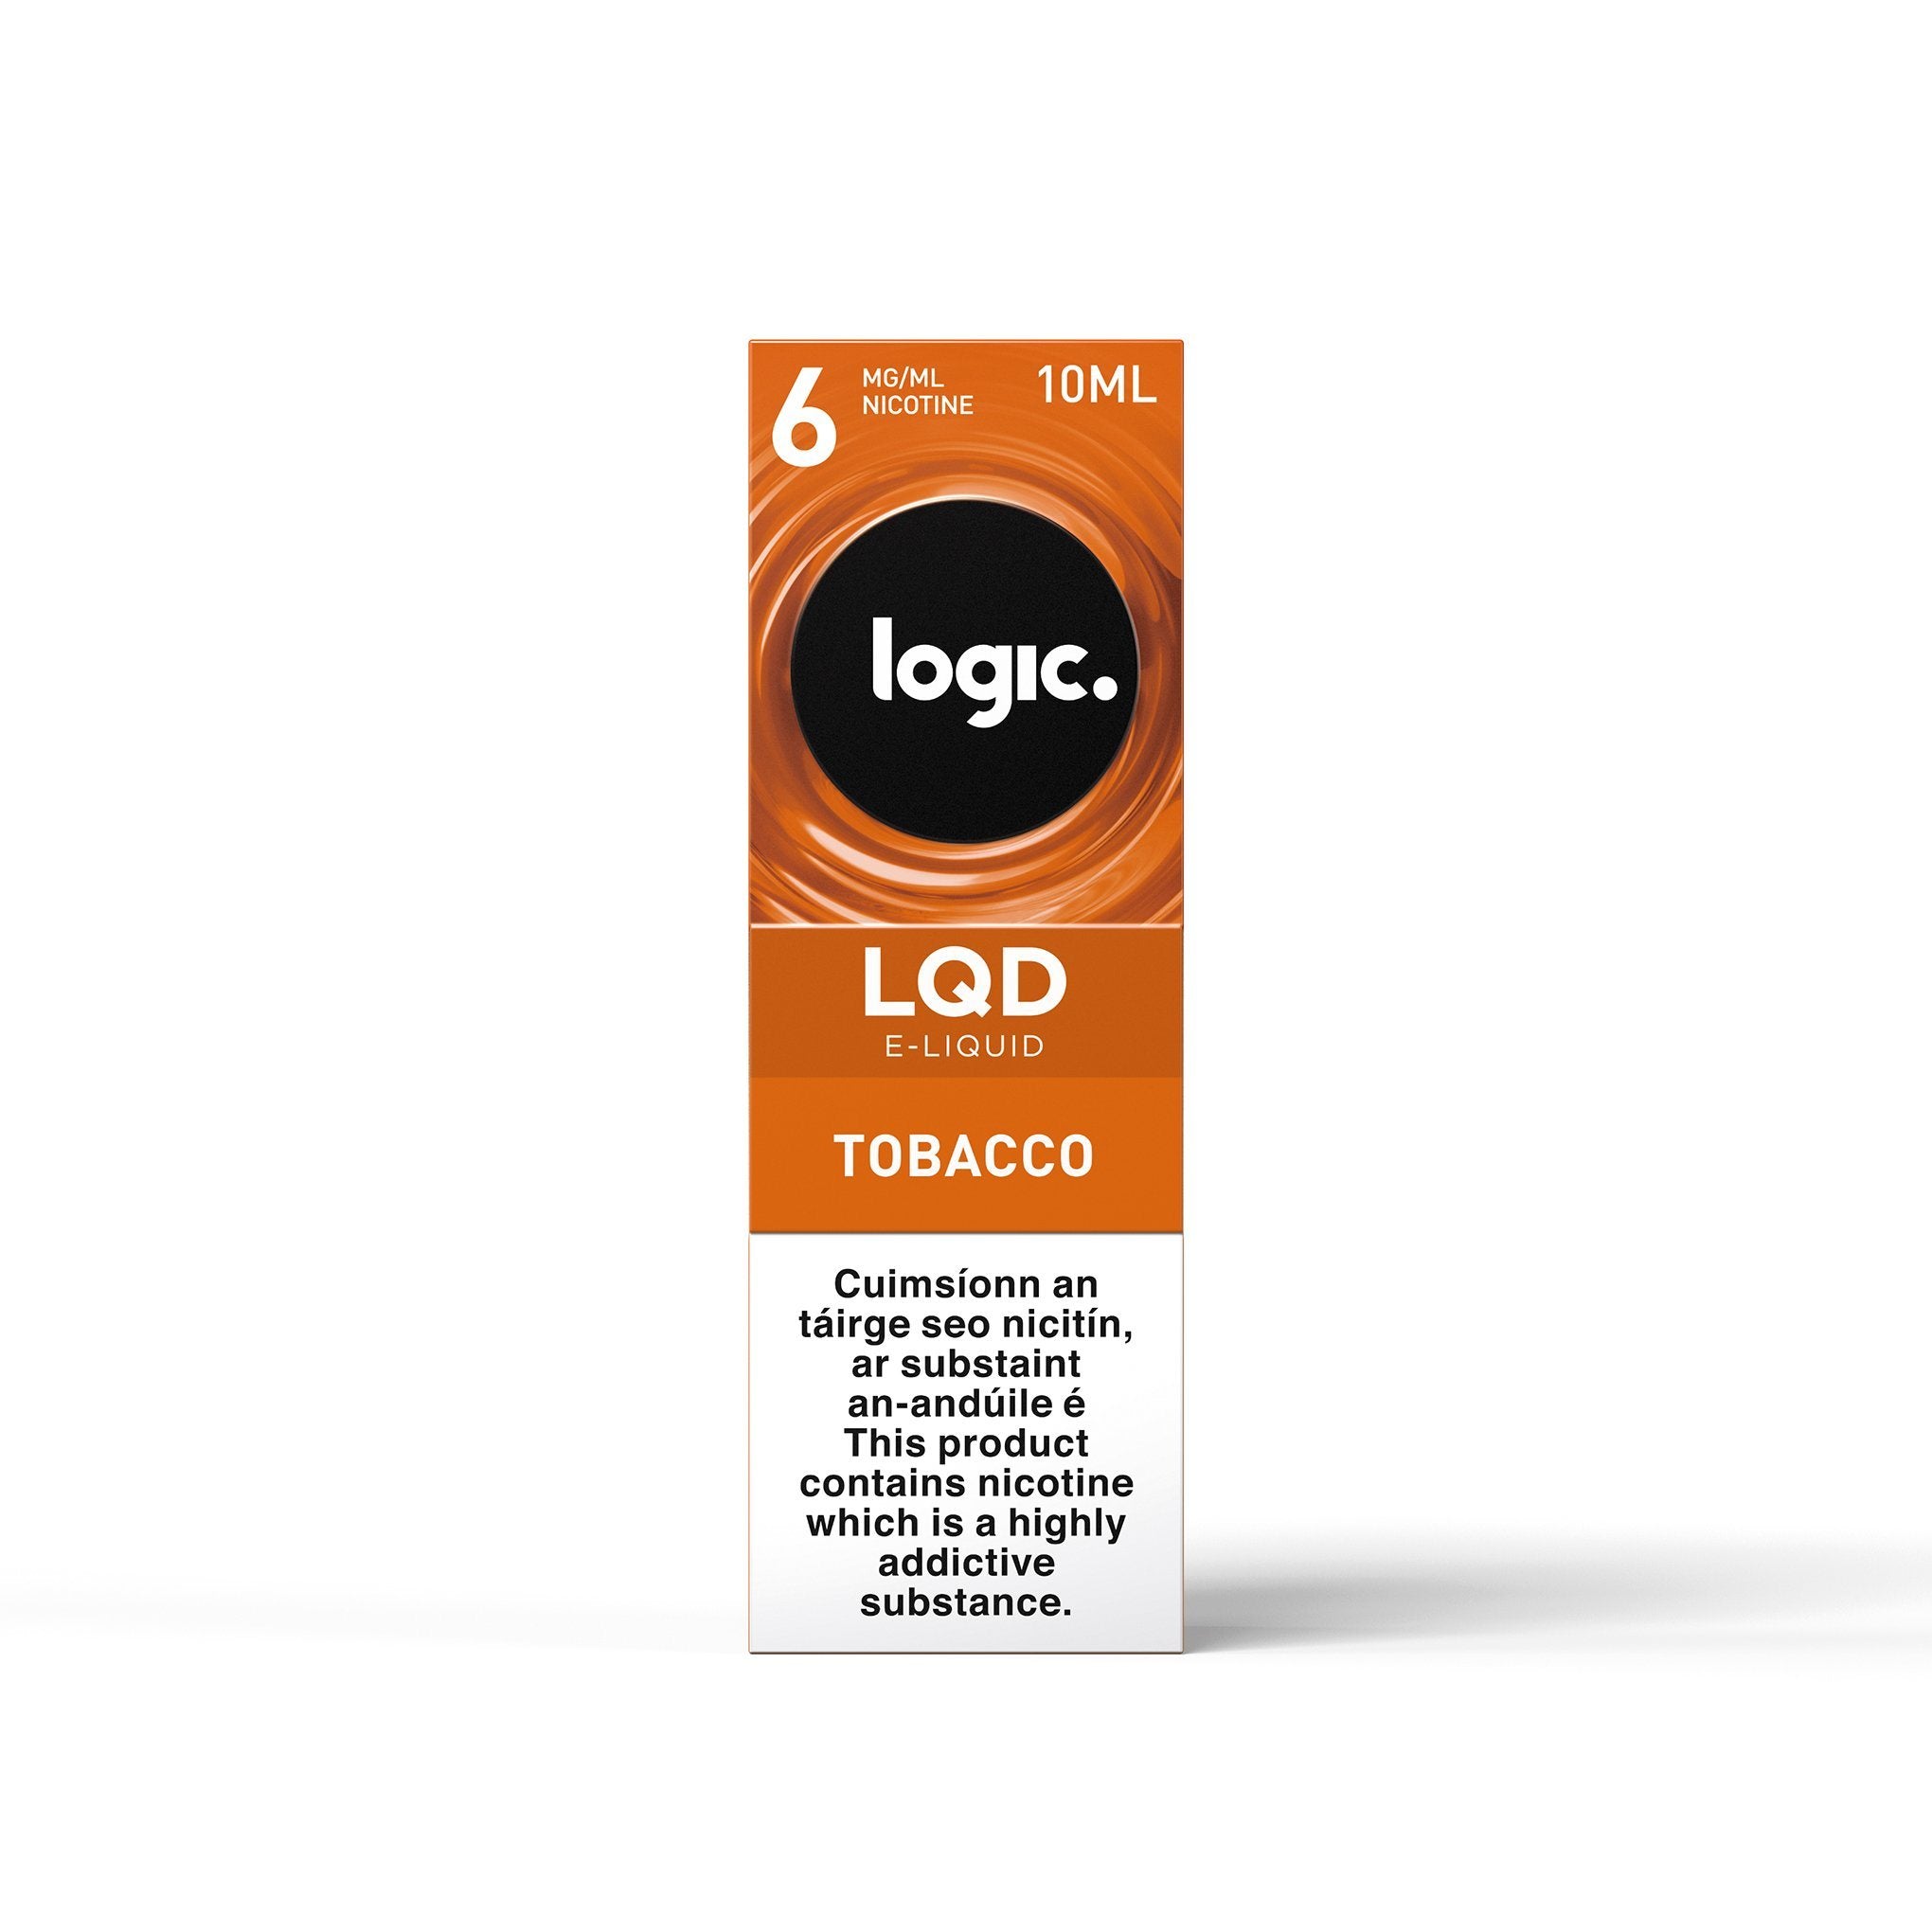 Logic LQD E-Liquid Tobacco 6MG- Low Nicotine